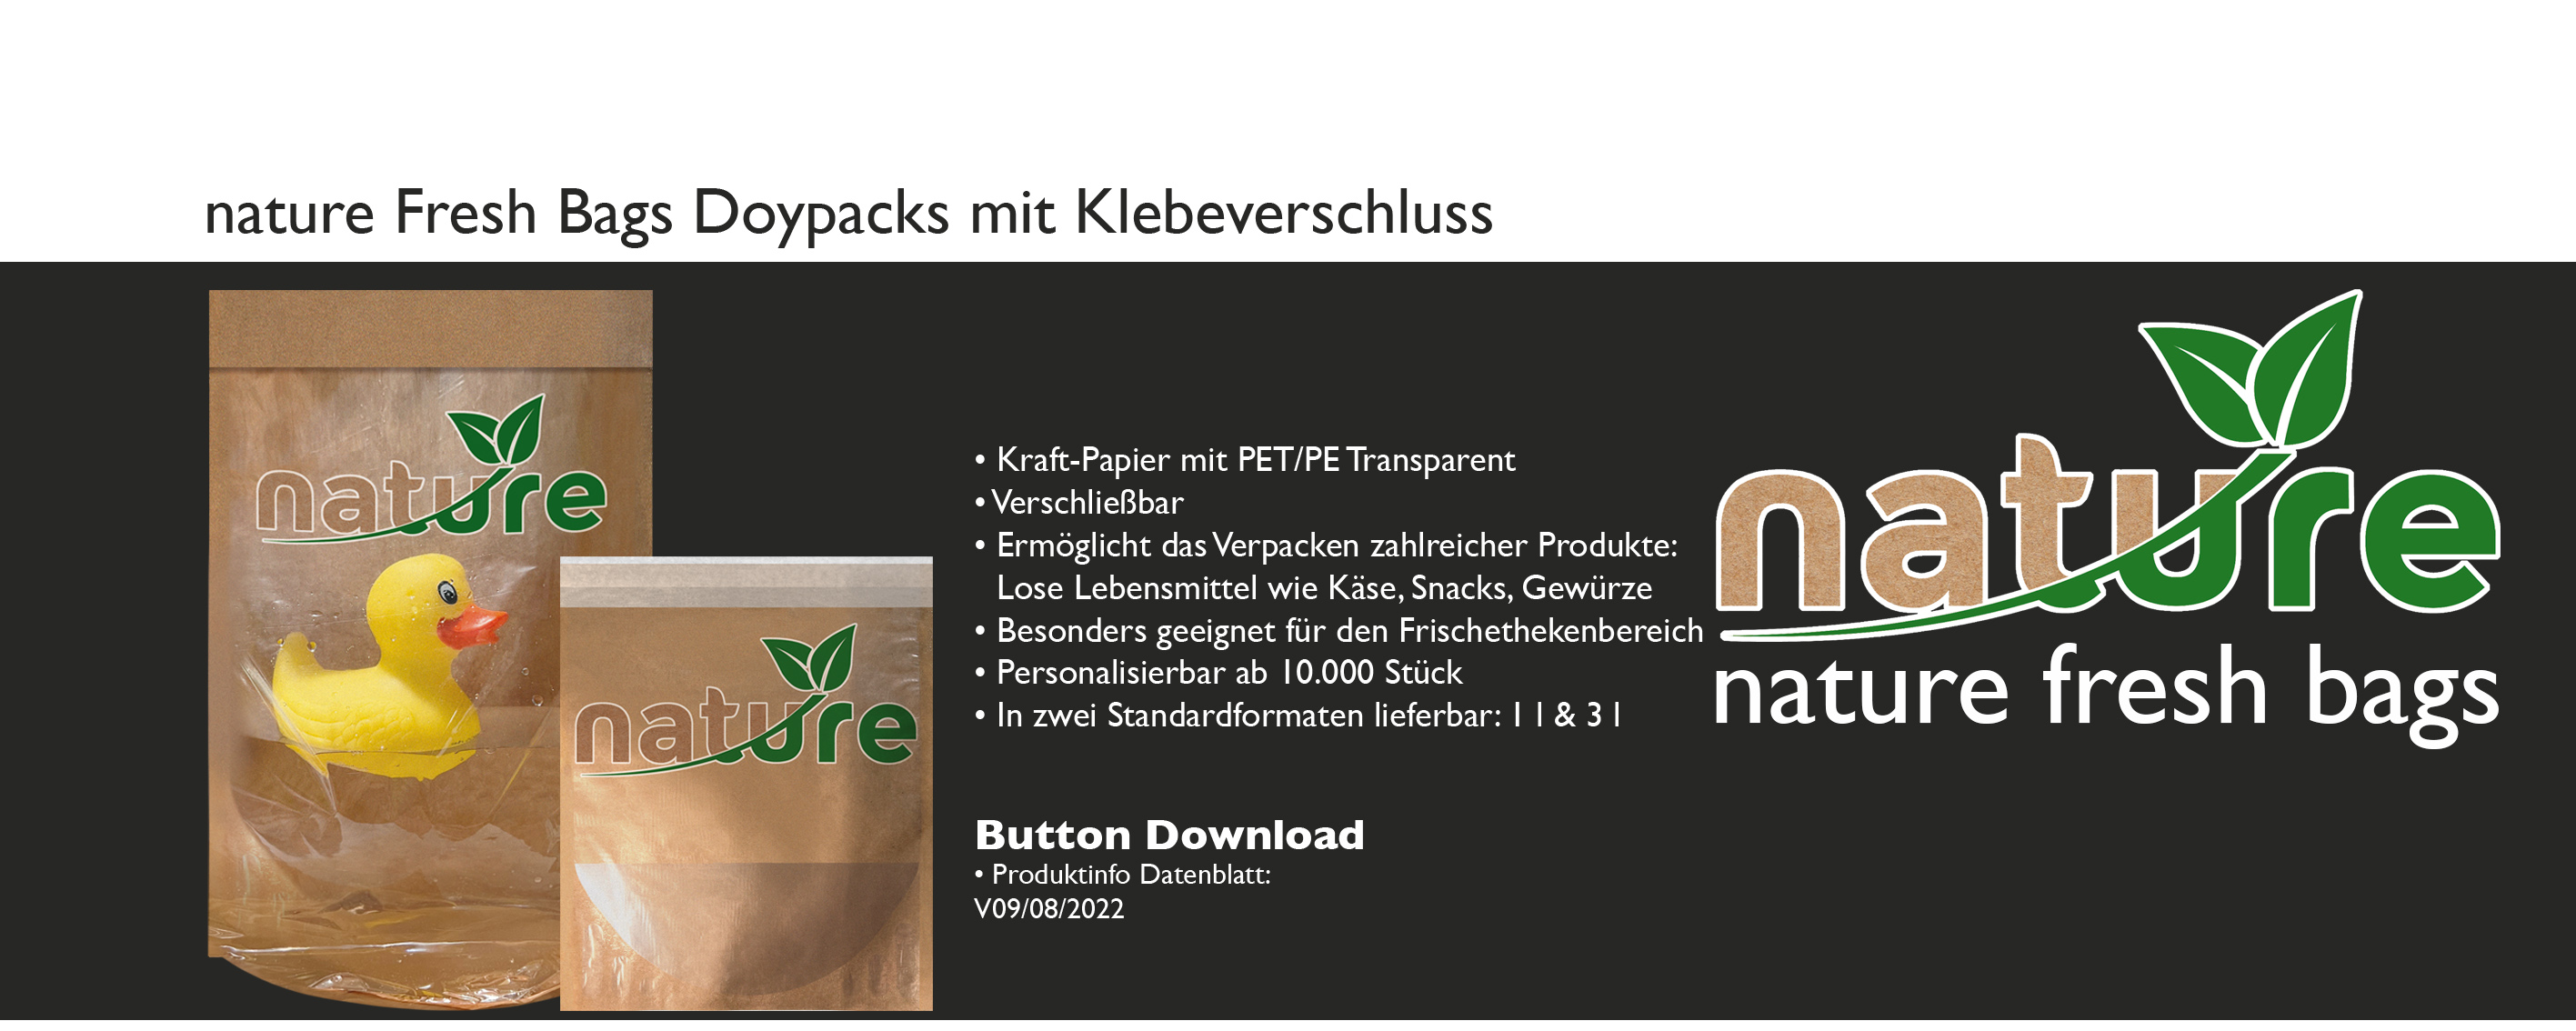 Austria Packaging Solution Doypacks nature fresh bags Klebeverschluss